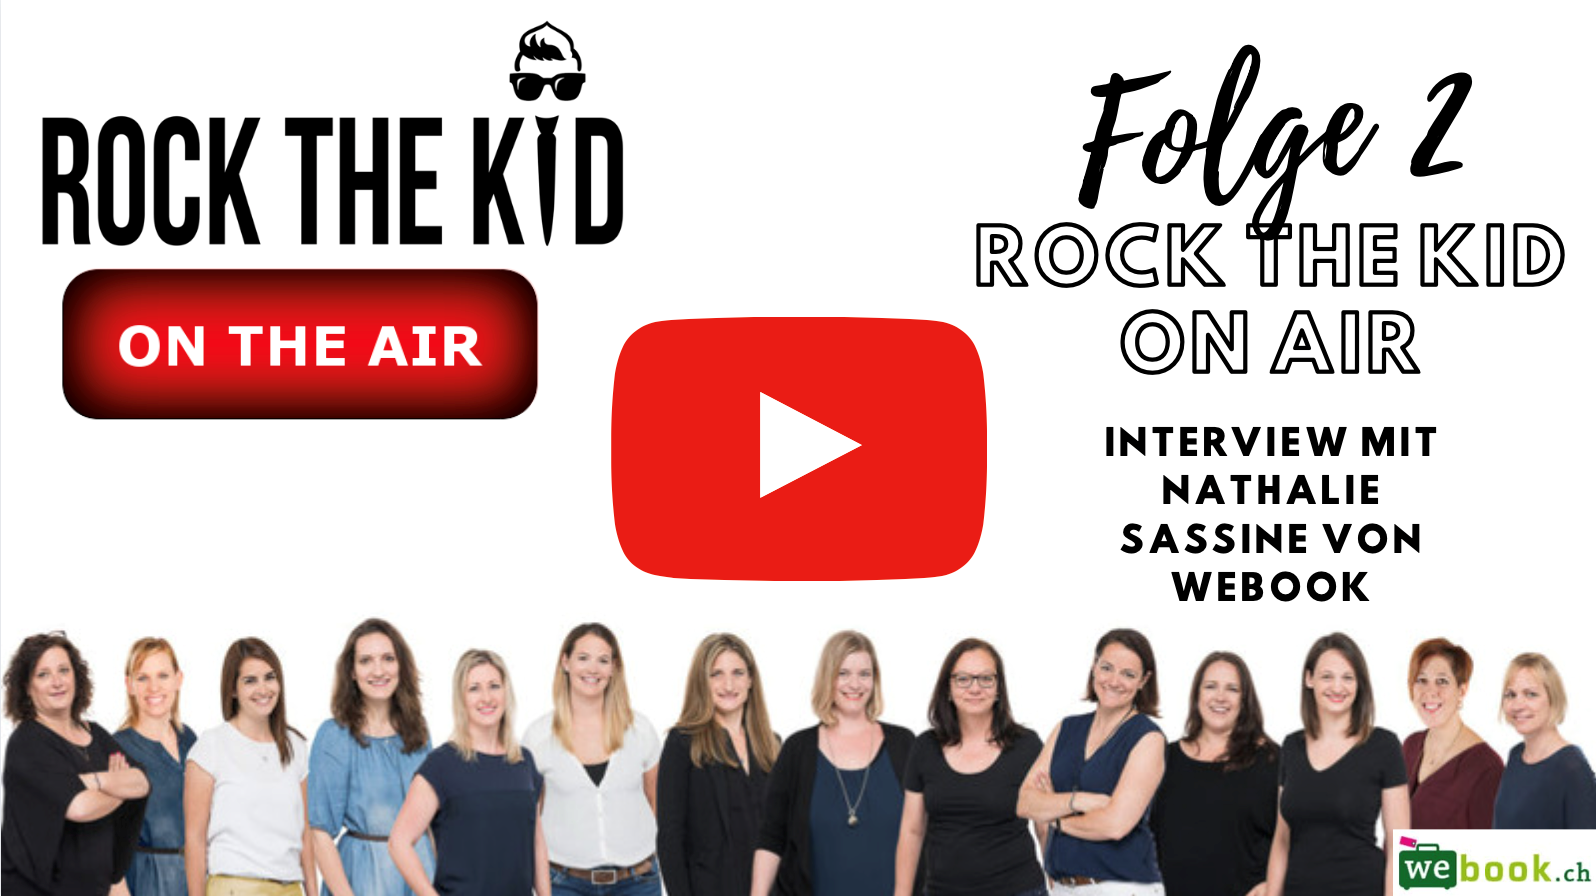 Rock The Kid On Air Webook schweizer online reisebüro webook rockthkid sommerferien 2020